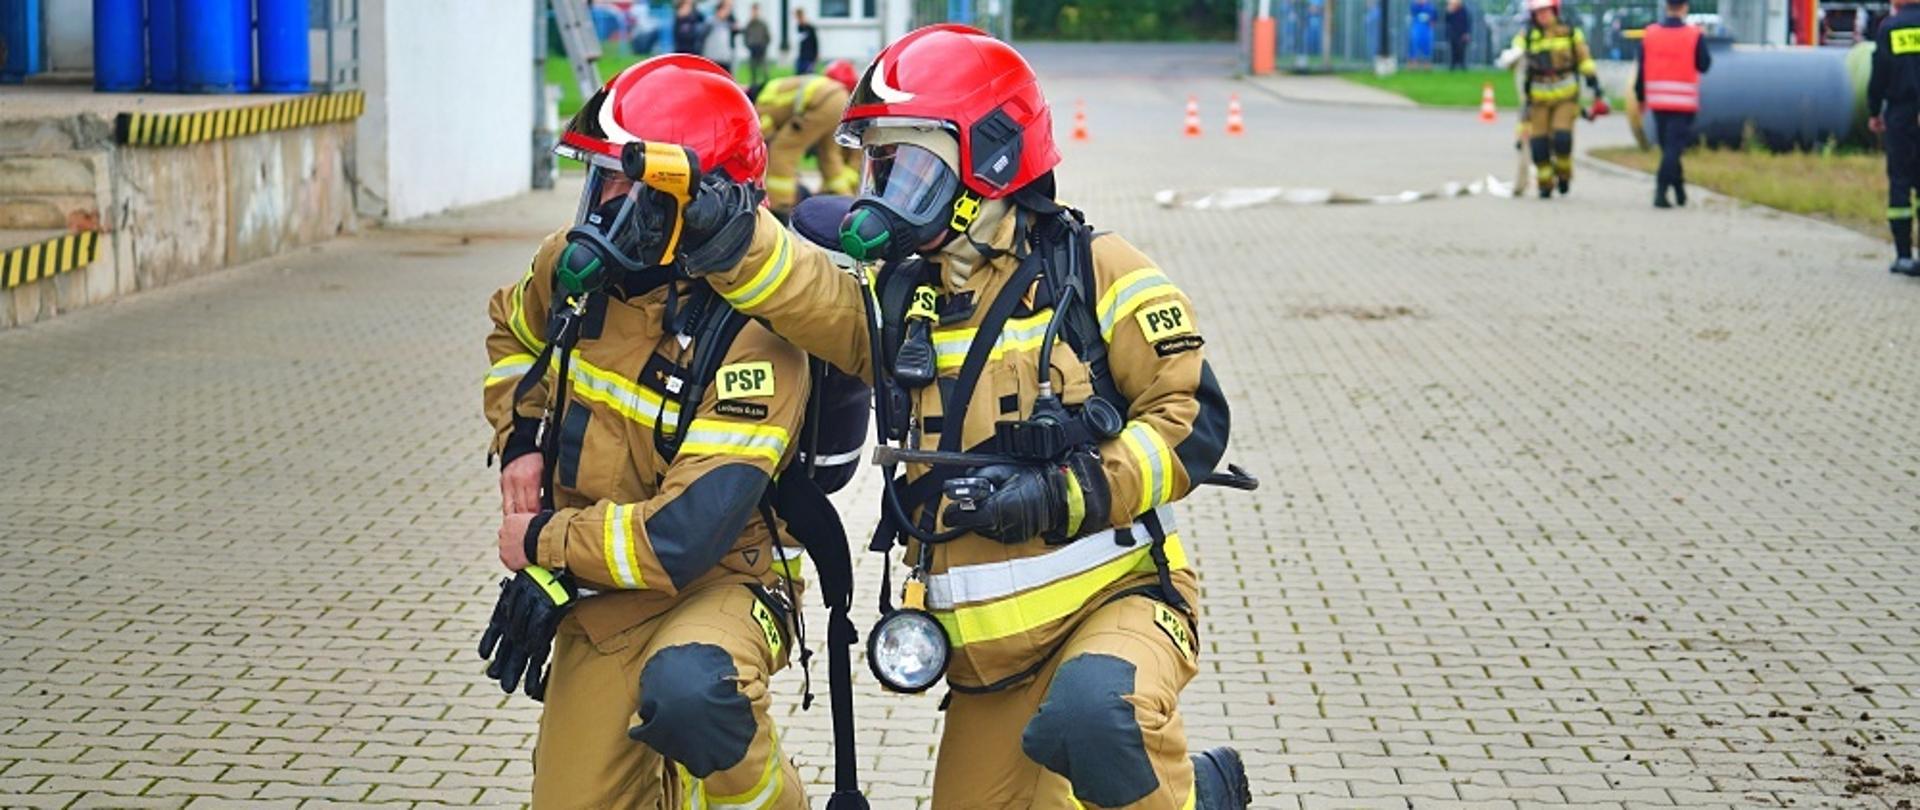 Dwóch strażaków prowadzi działania rozpoznawcze. W tle widoczni są inni strażacy biorący udział w ćwiczeniach.